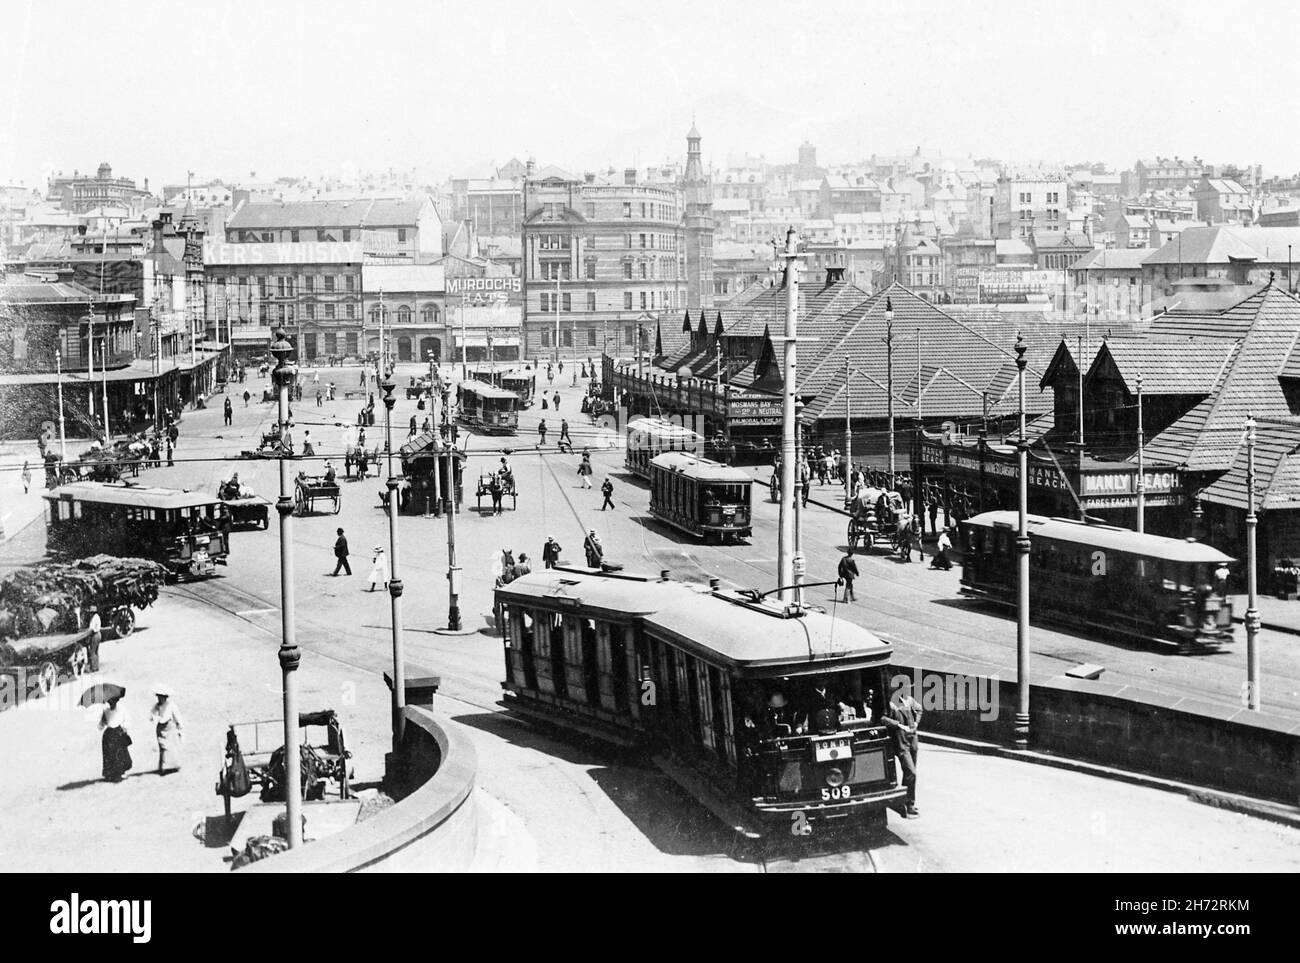 Historique Circular Quay, Sydney avec trams vers 1910. Banque D'Images